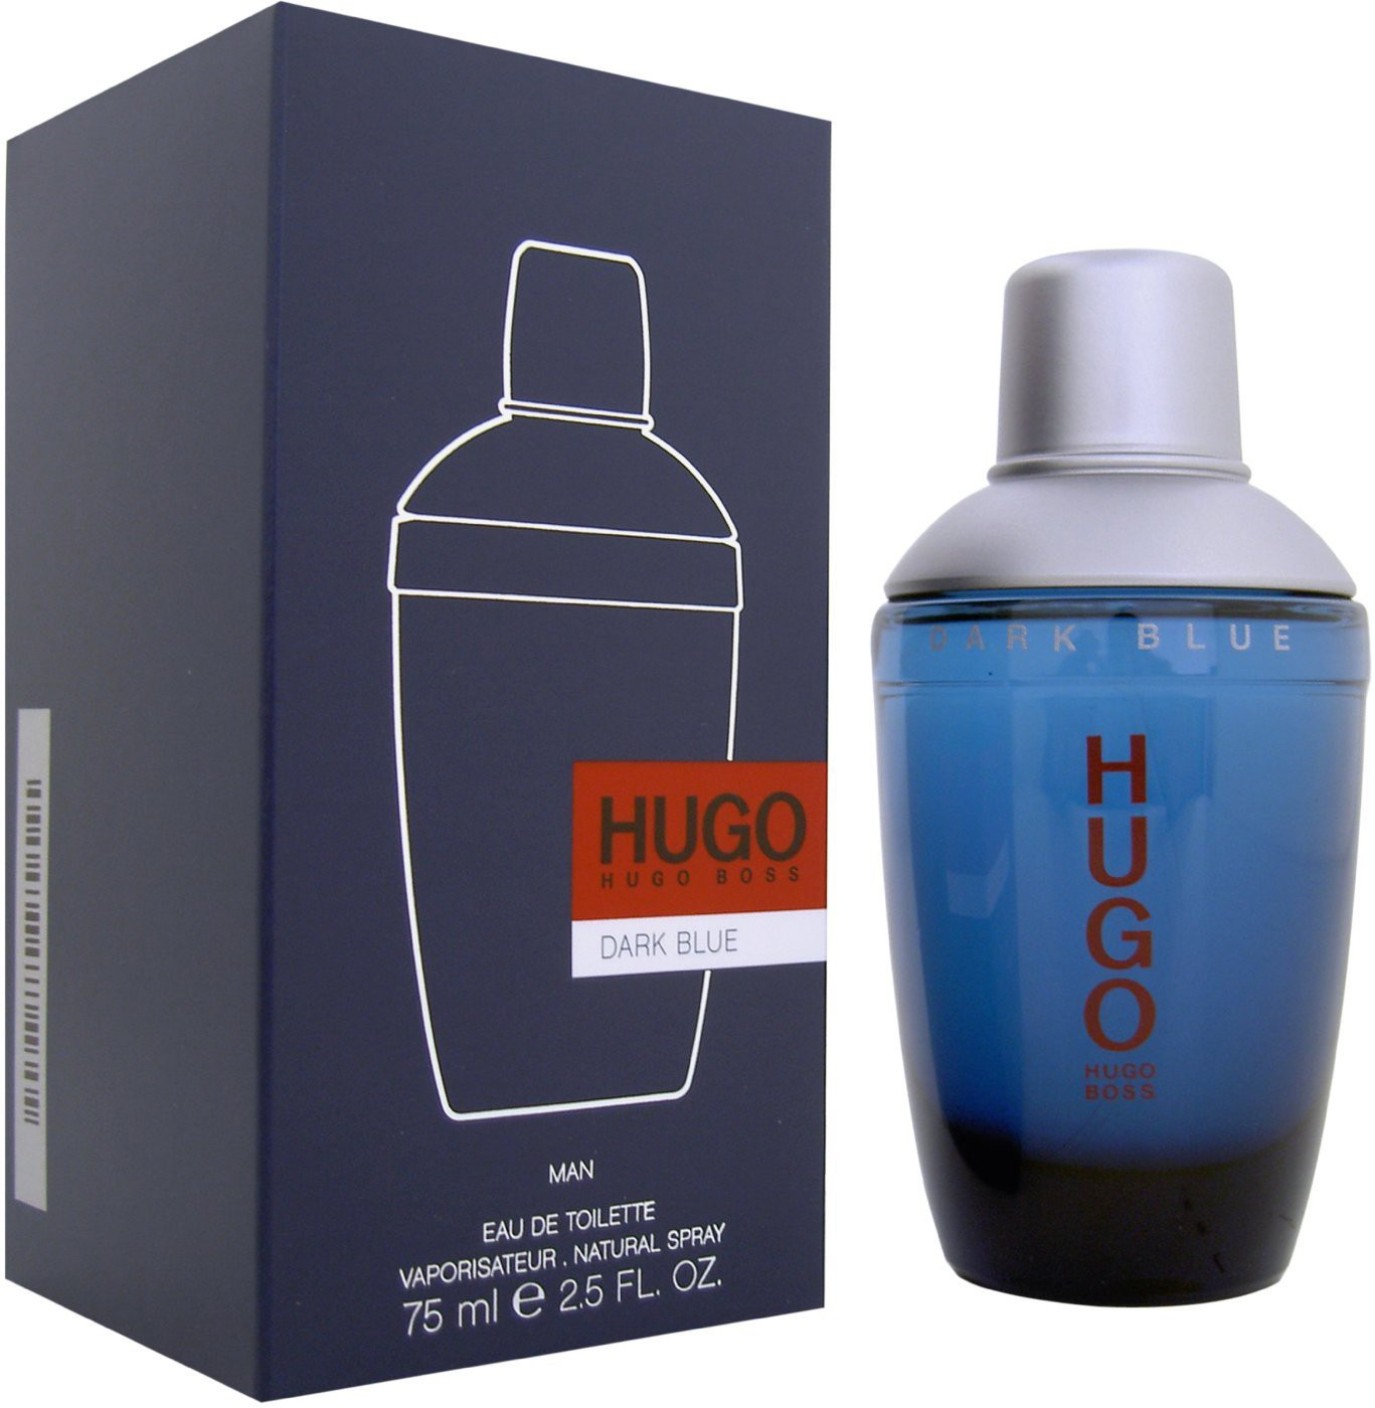 Buy Hugo Boss Dark Blue EDT - 75 ml Online In India | Flipkart.com